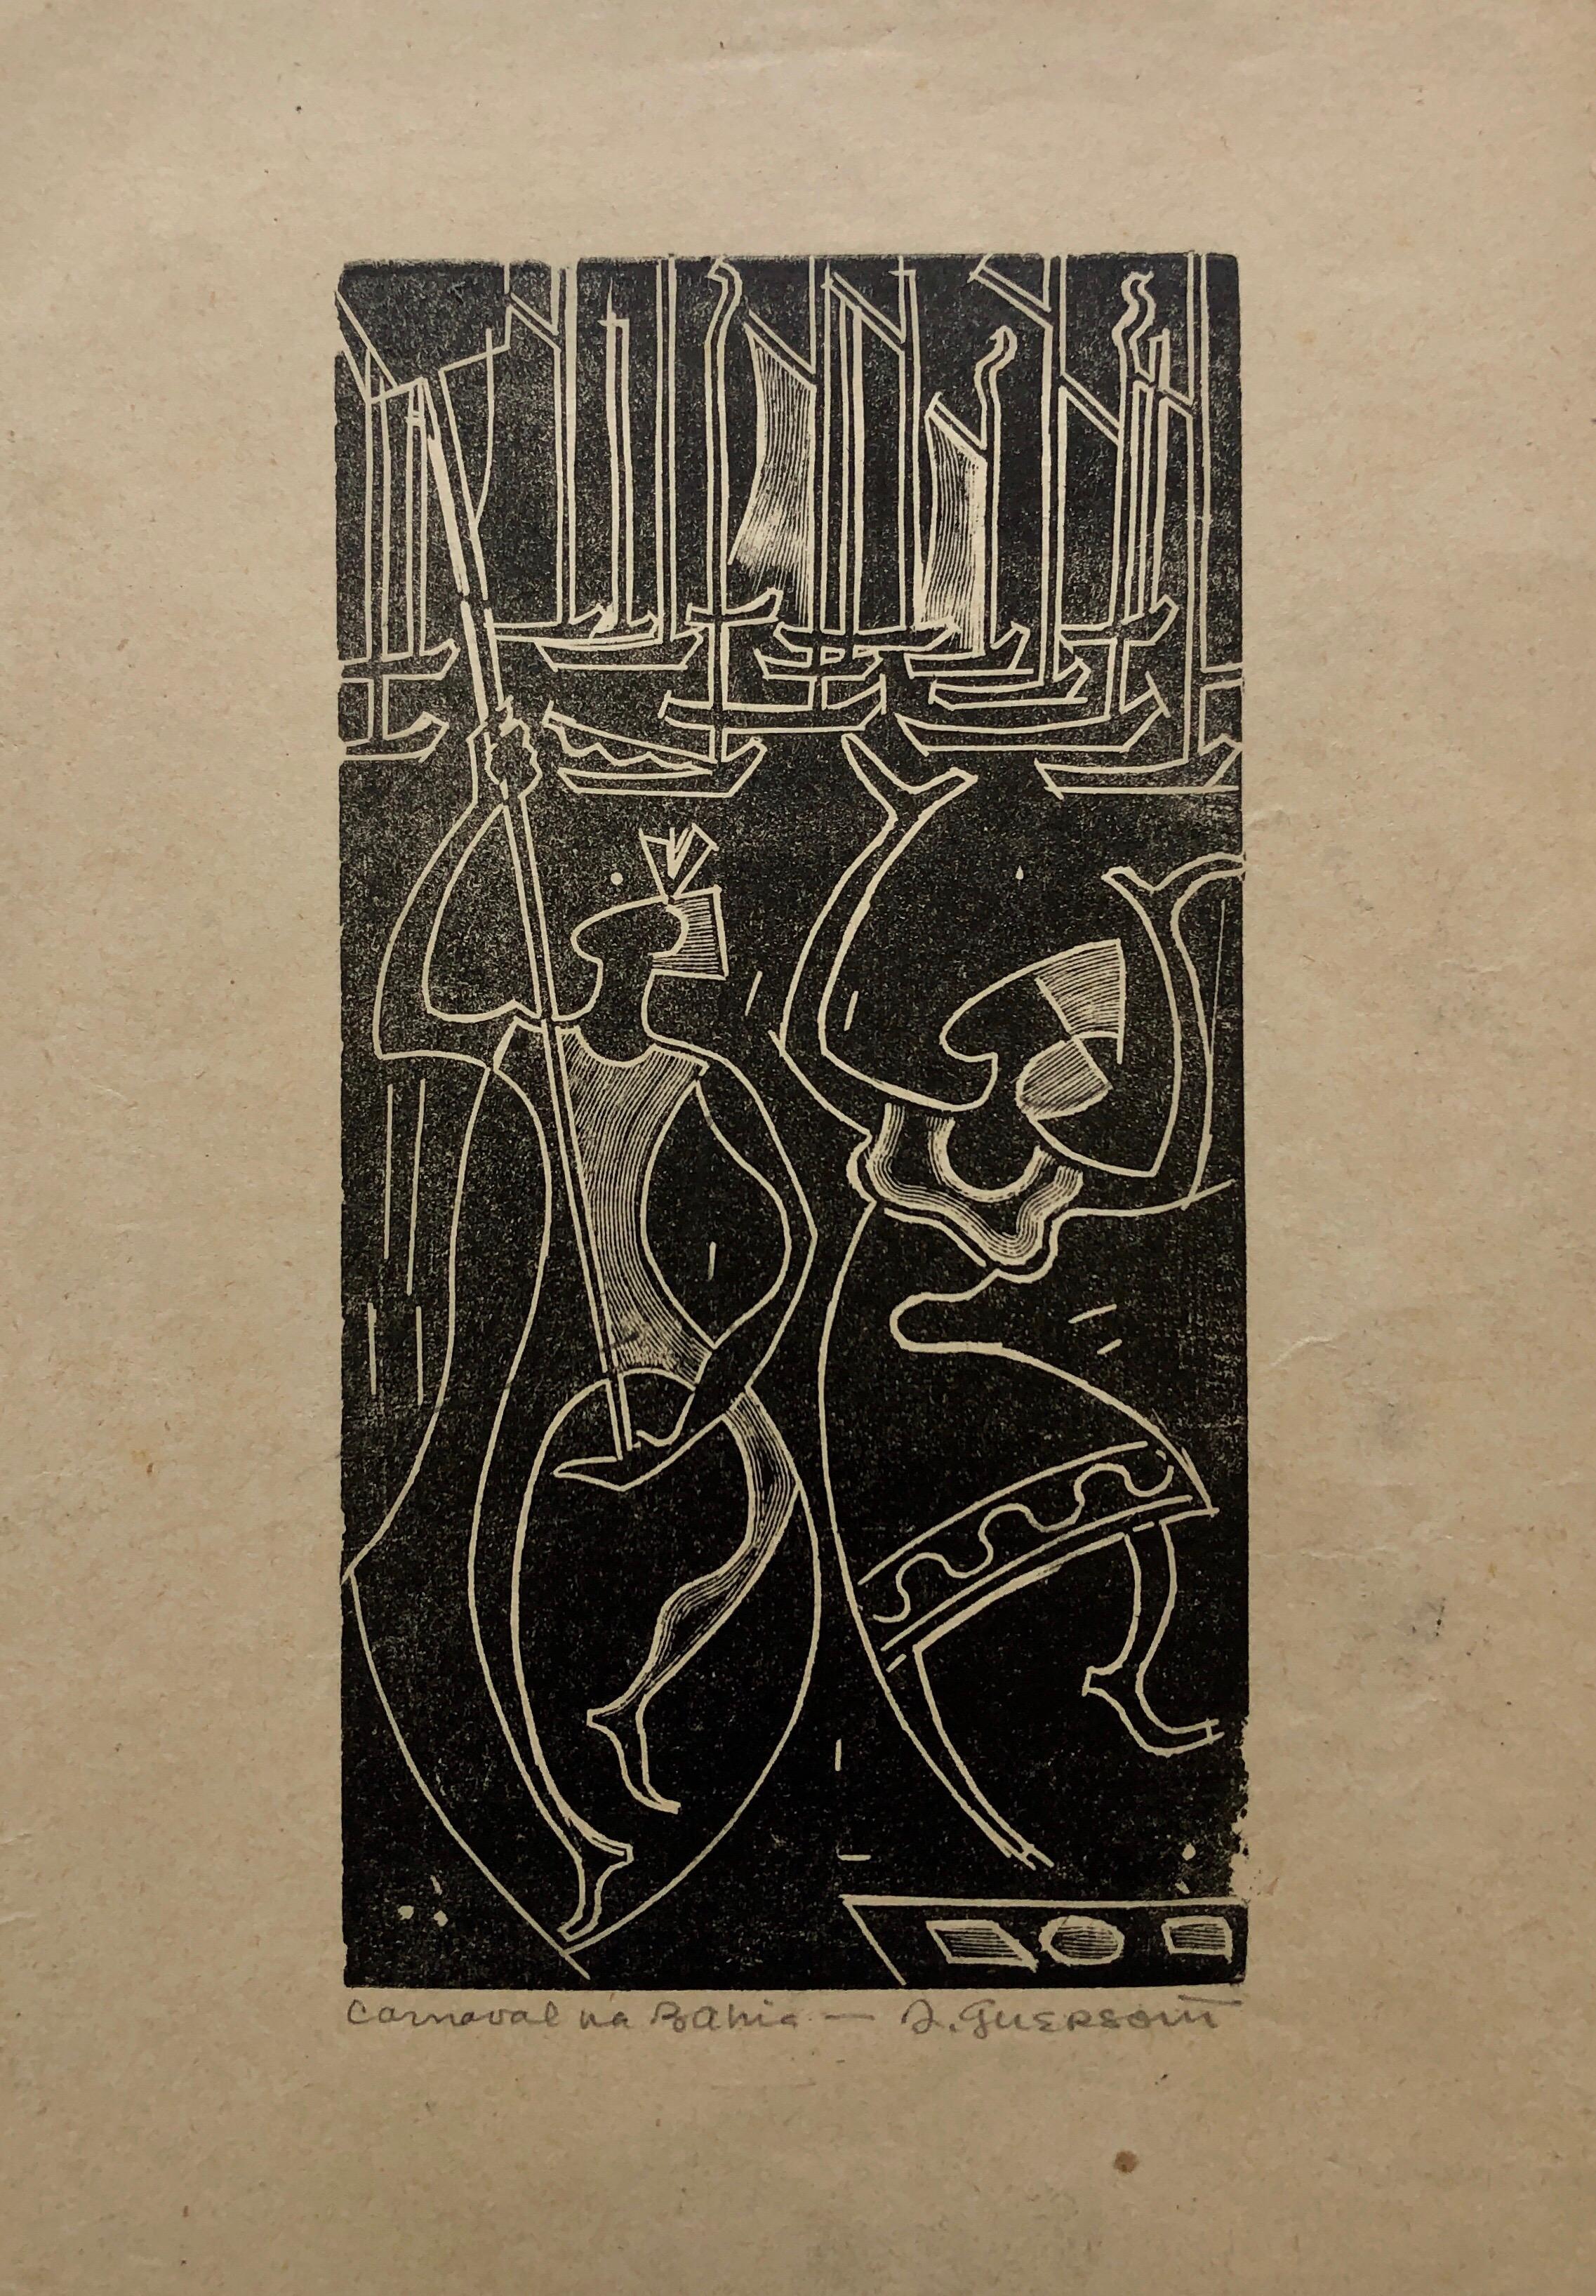 1945 Brasilianischer Meister, Art-Déco-Akte Serigraph Holzschnitt Karneval Bahia (Schwarz), Nude Print, von Odetto Guersoni